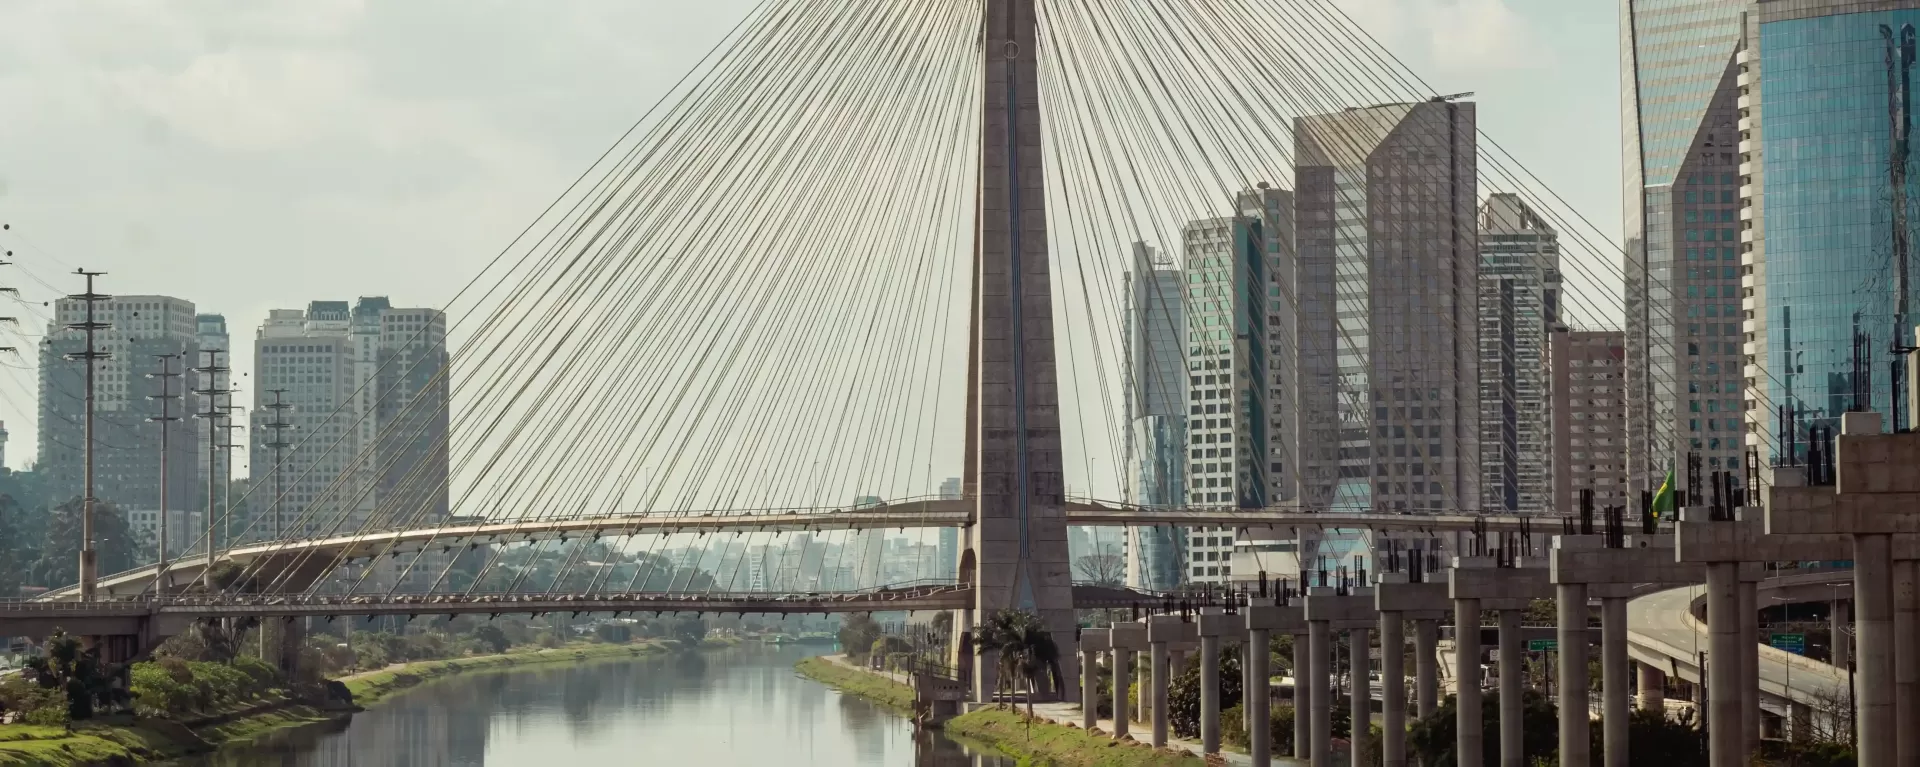 View of São Paulo city bridge over river and city